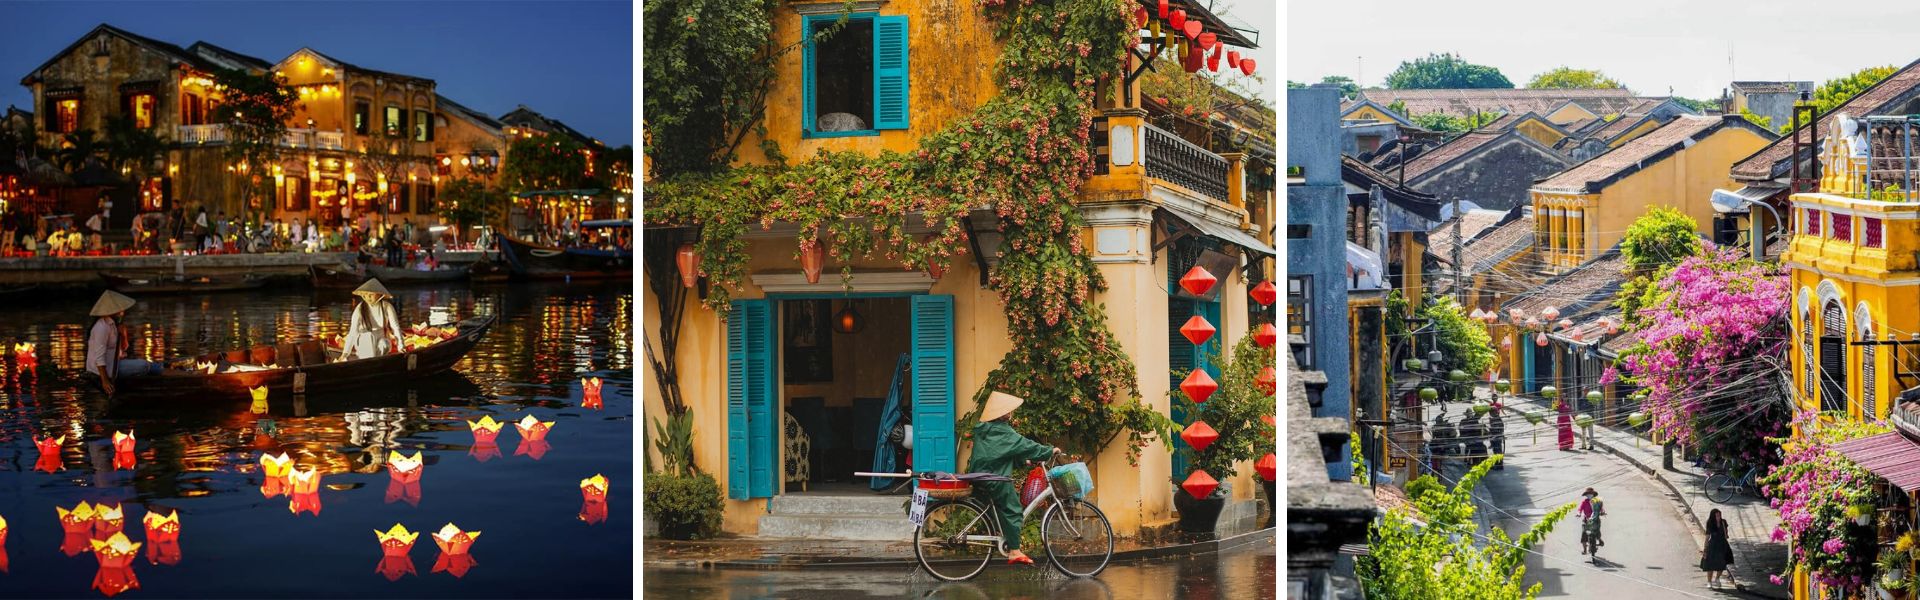 Hoi An: Sehenswürdigkeiten und Aktivitäten | Vietnam Reisen